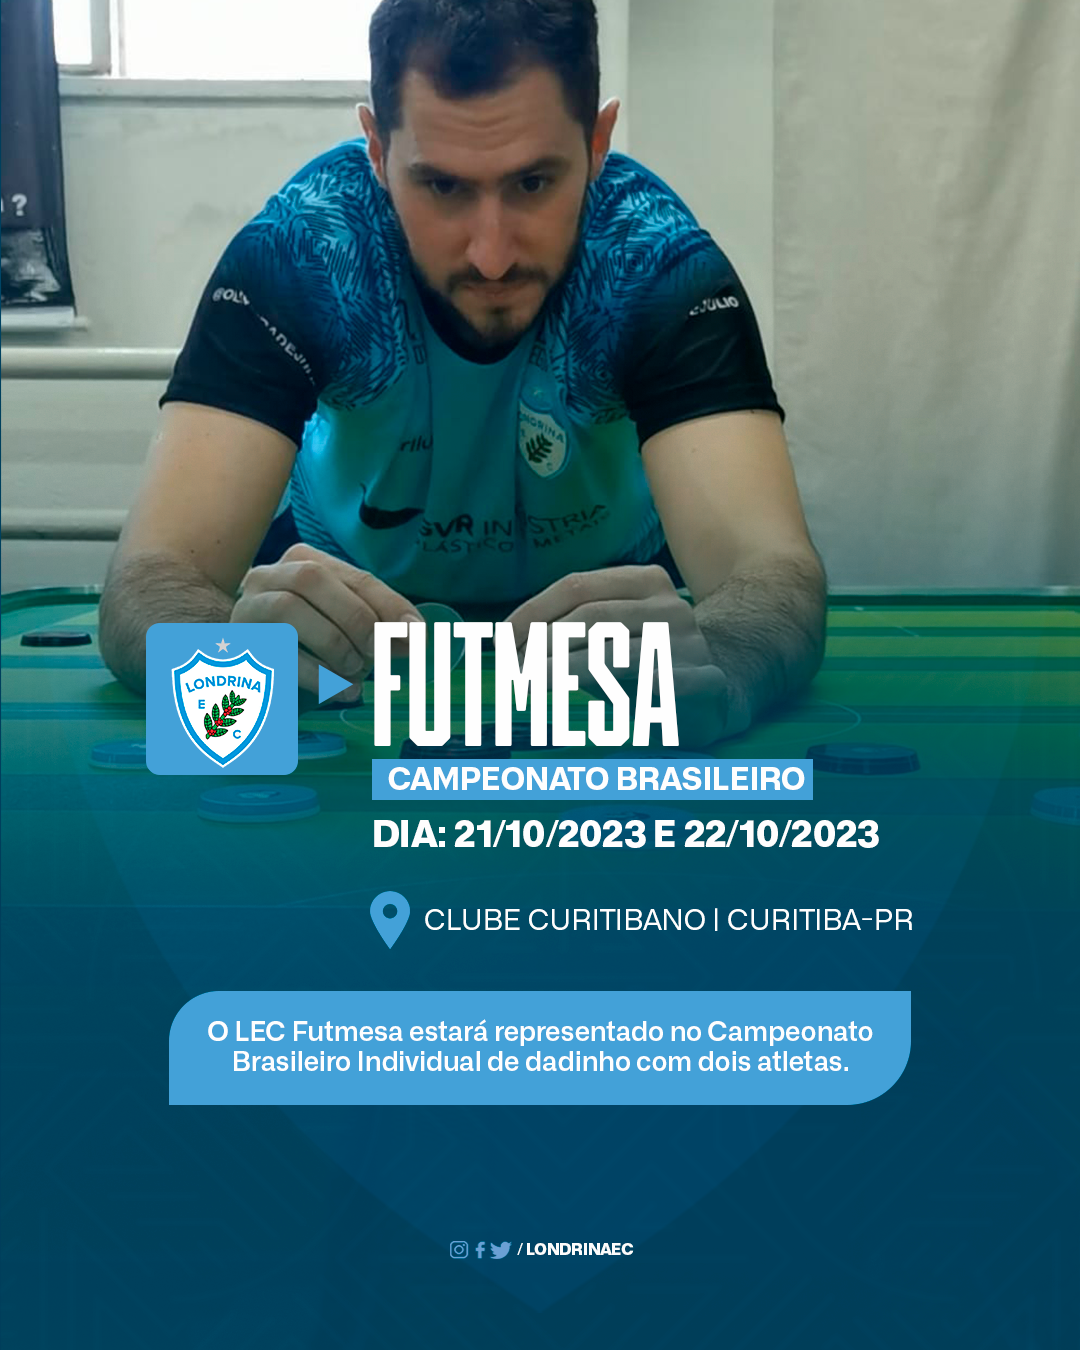 LEC Futmesa estará representado no Campeonato Brasileiro